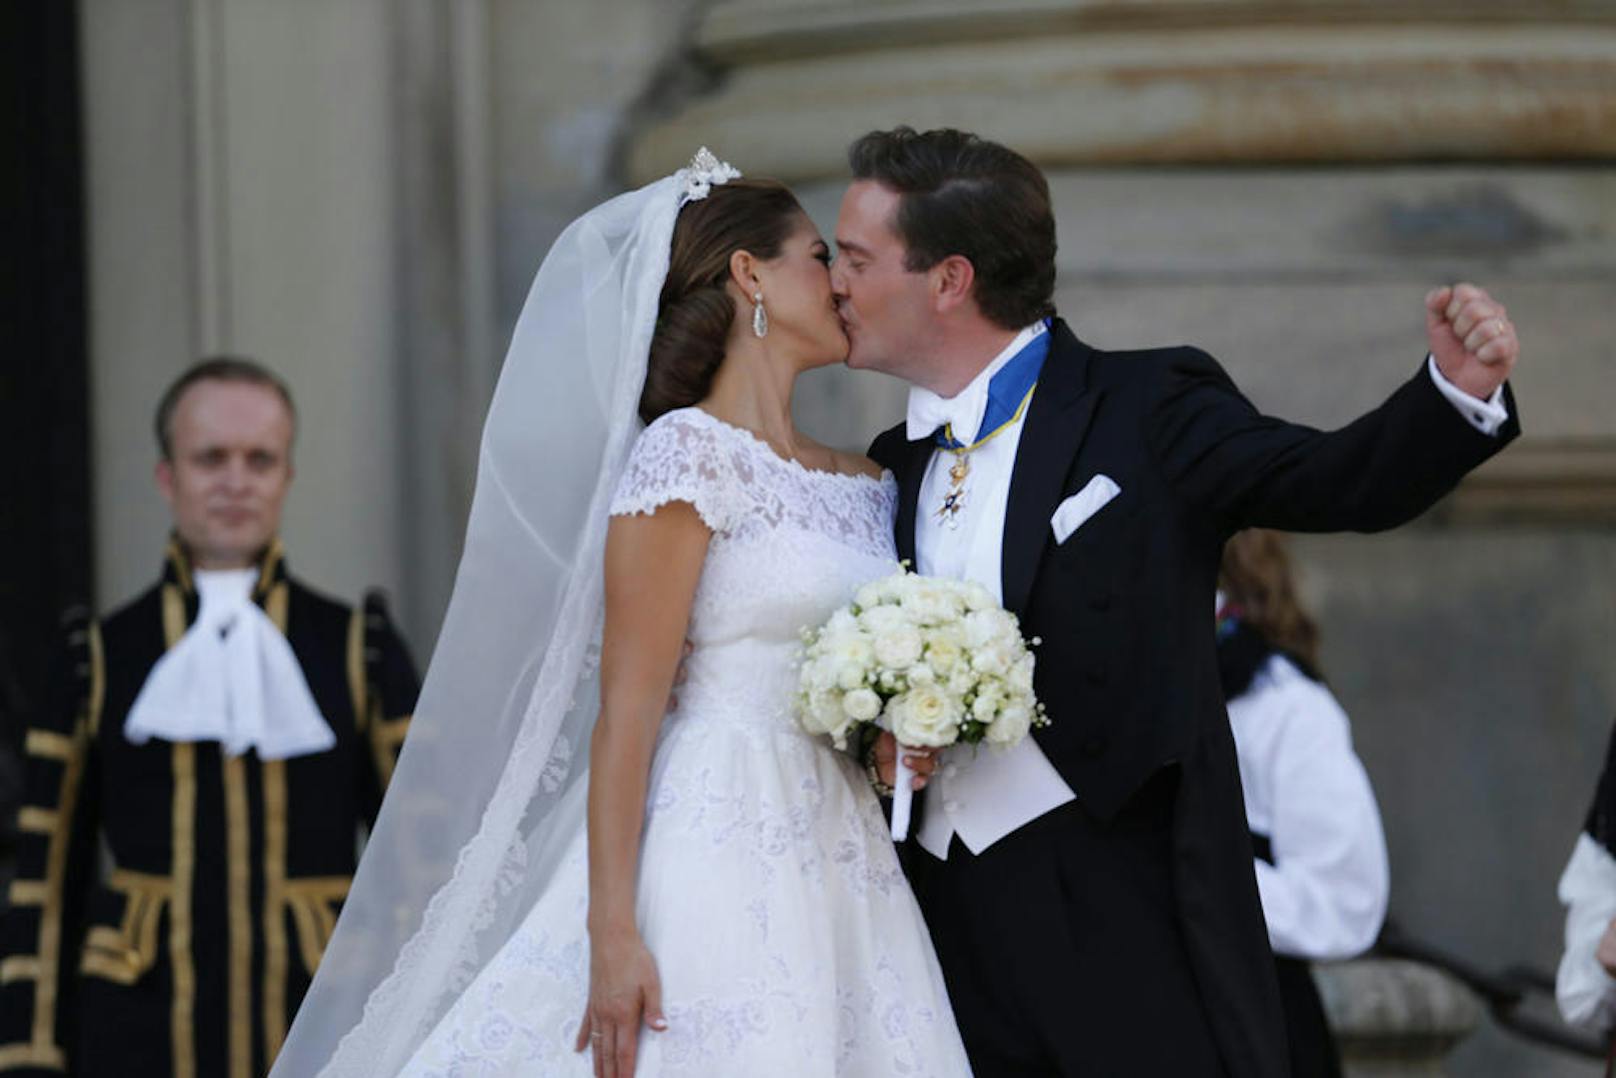 Hochzeit: Prinzessin Madeleine & Christopher O'Neill